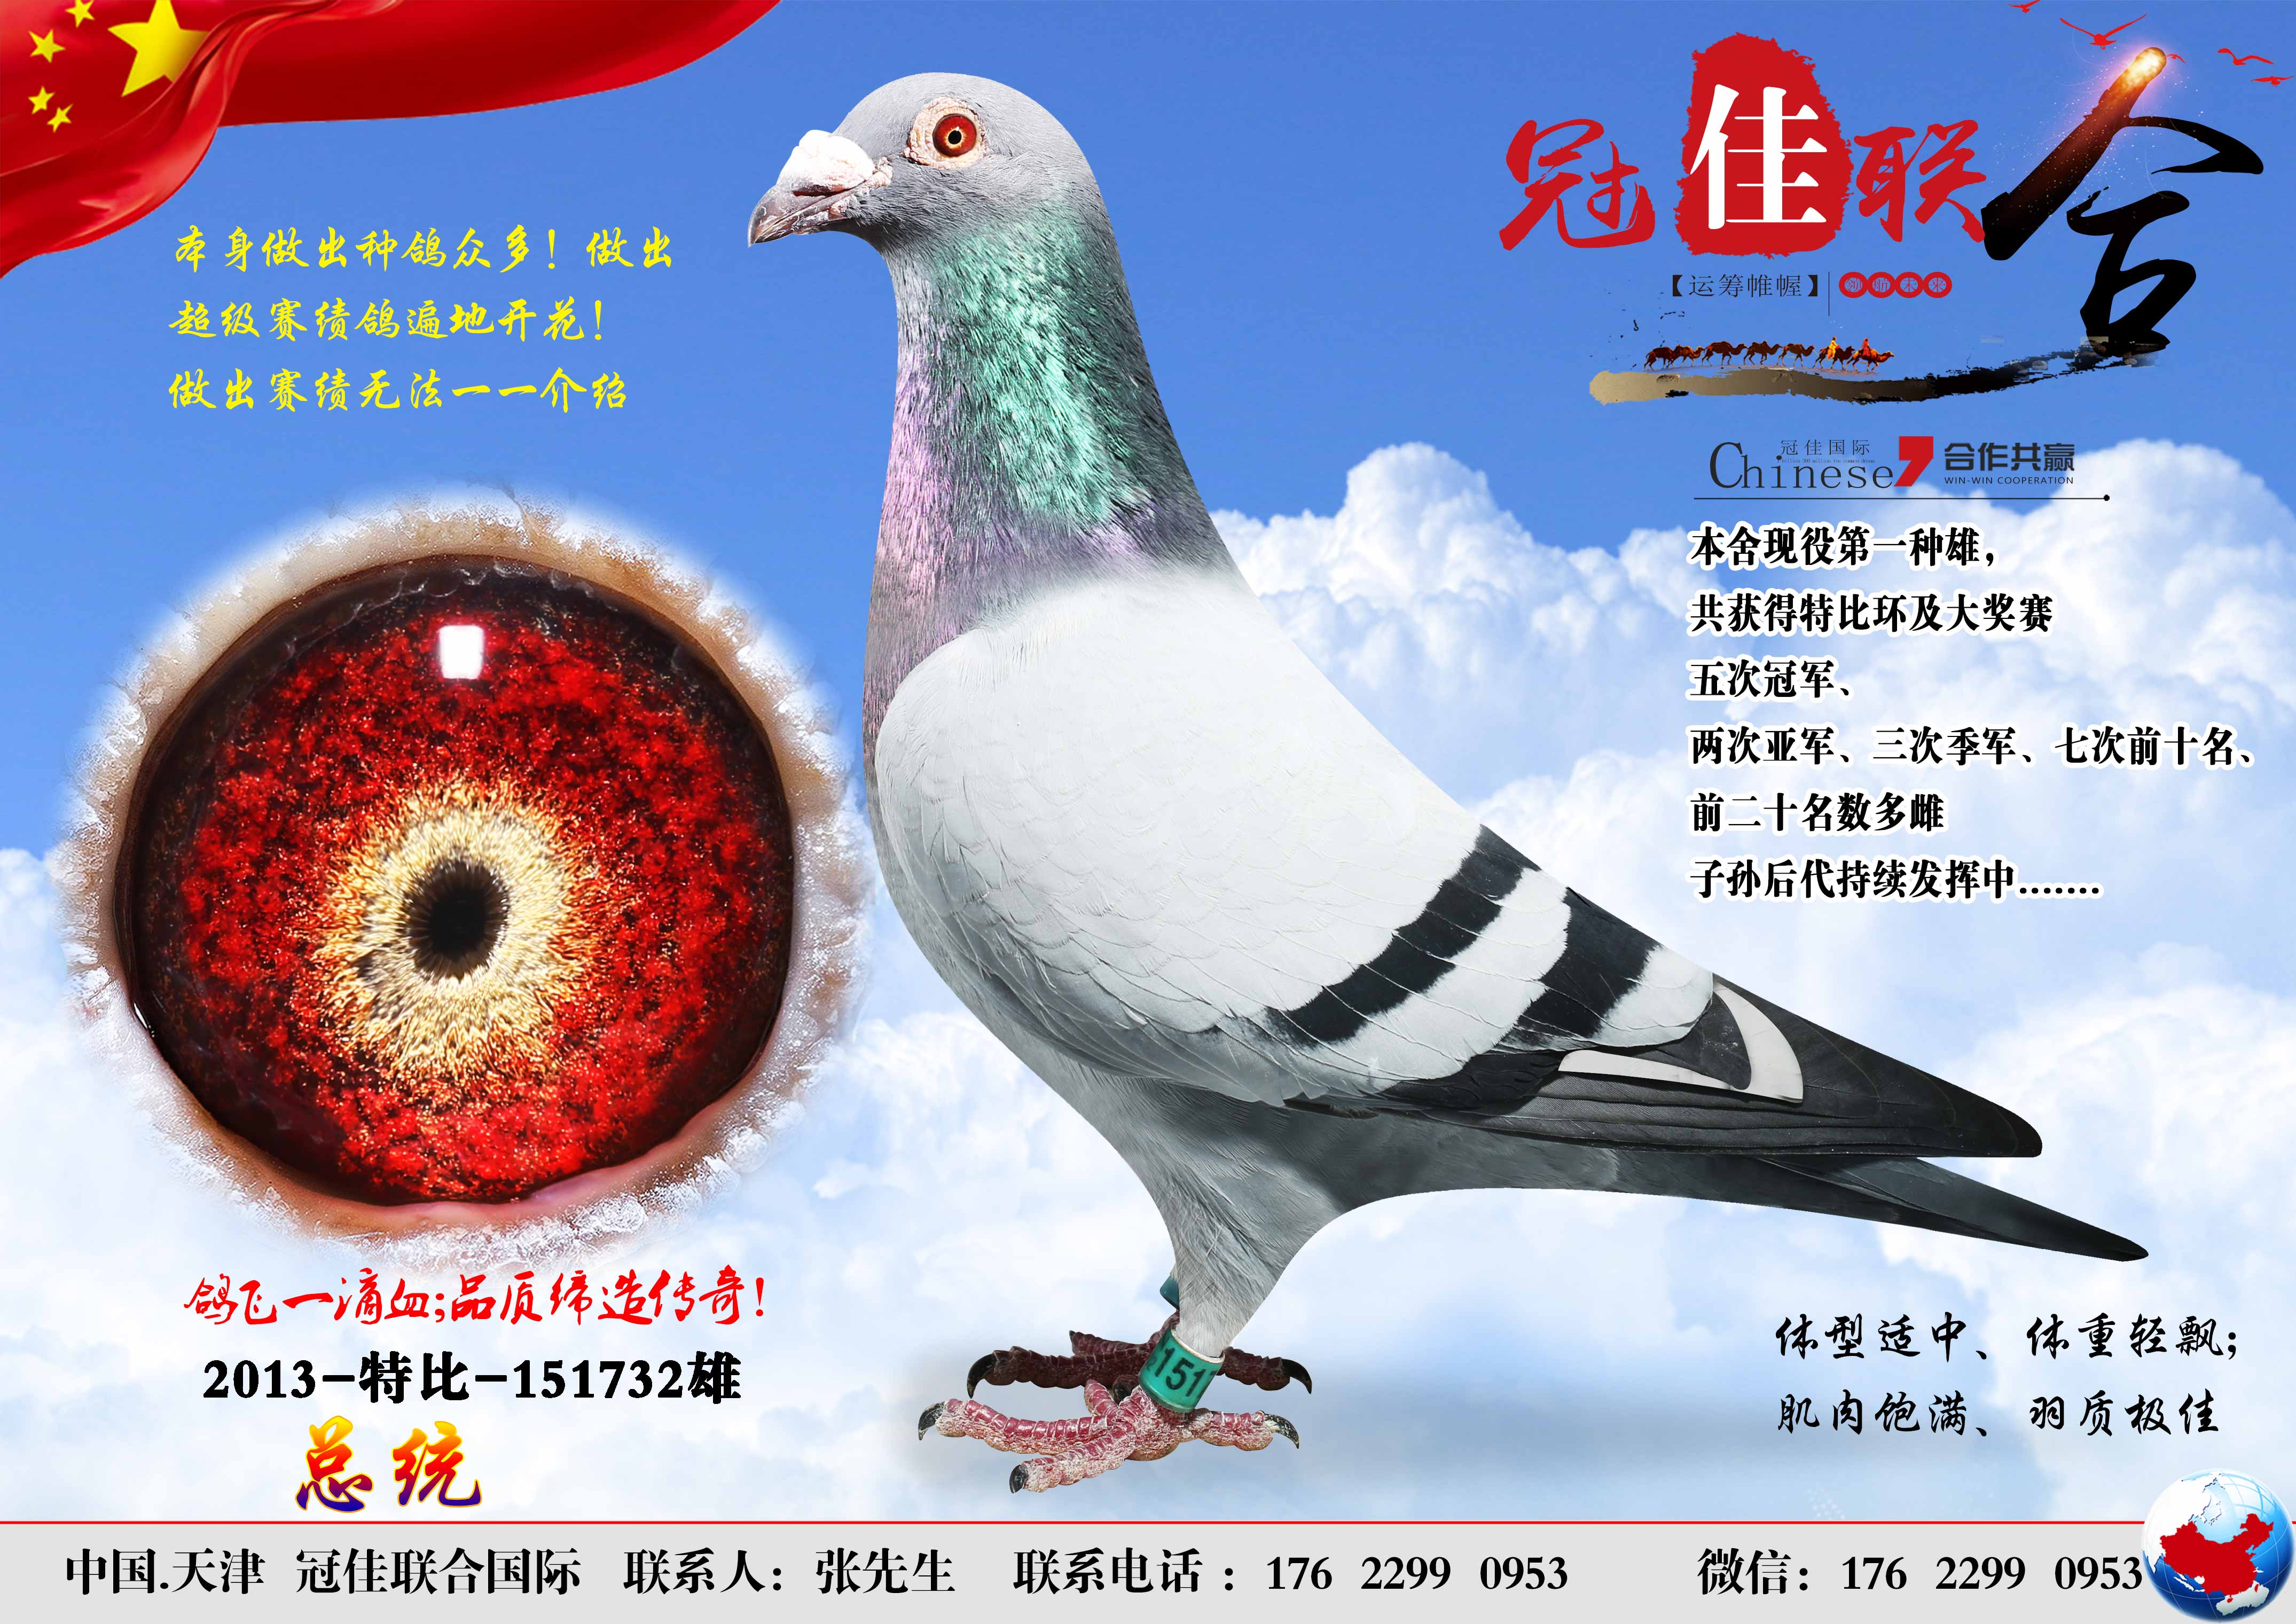 北京长城鸽业的种鸽图片